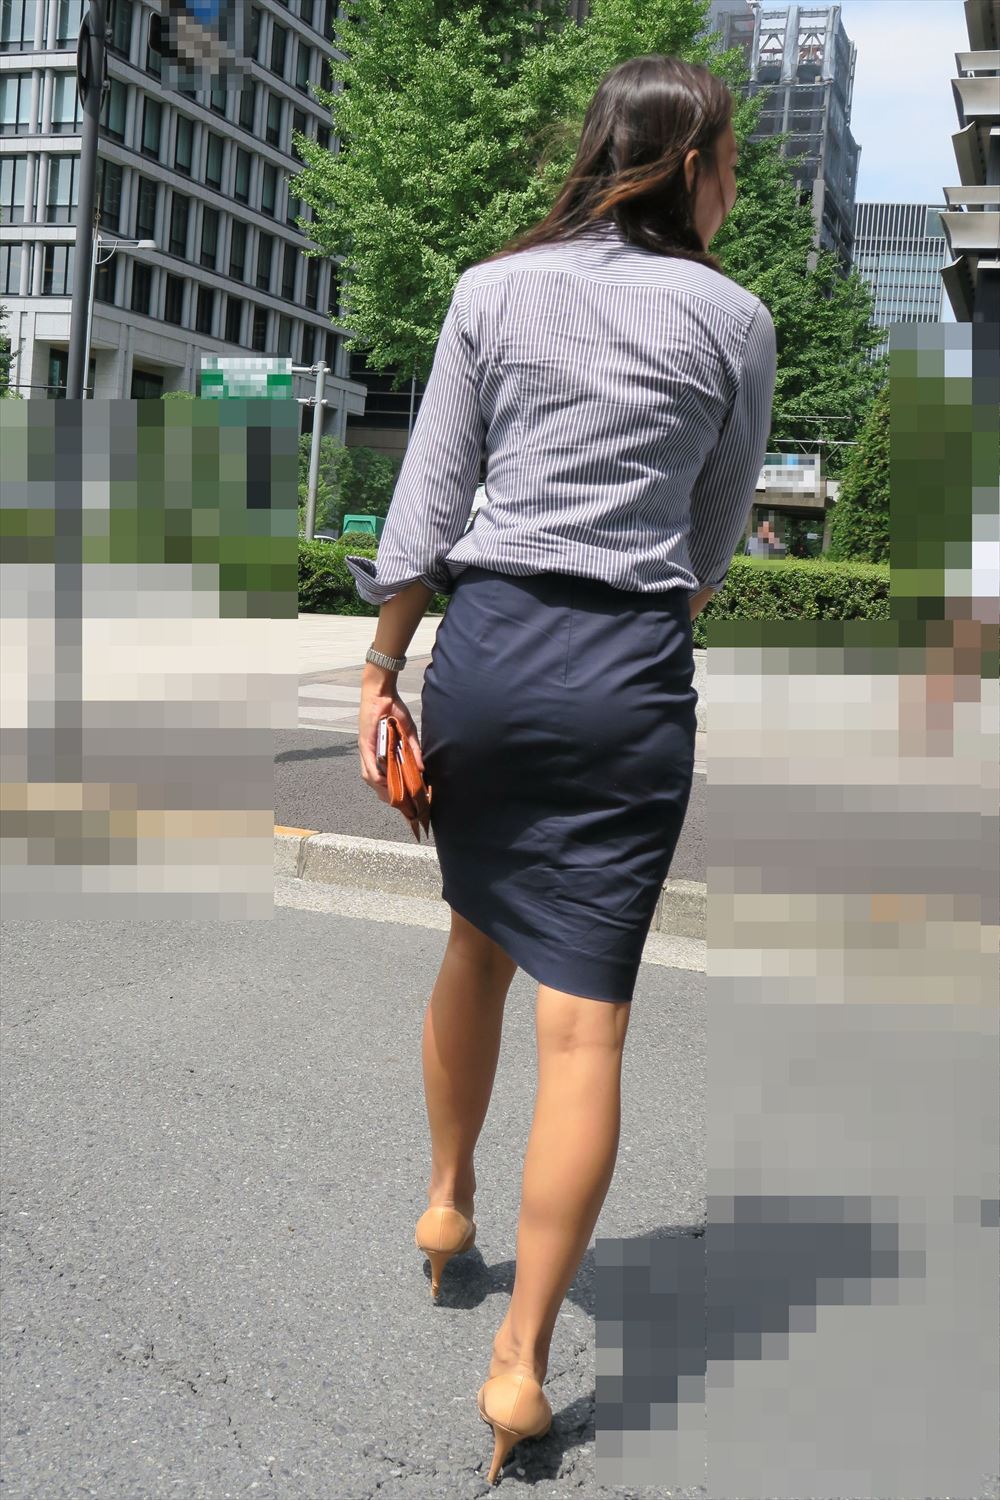 OLさんや就活女子のタイトスカートお尻を街撮りした素人エロ画像-183